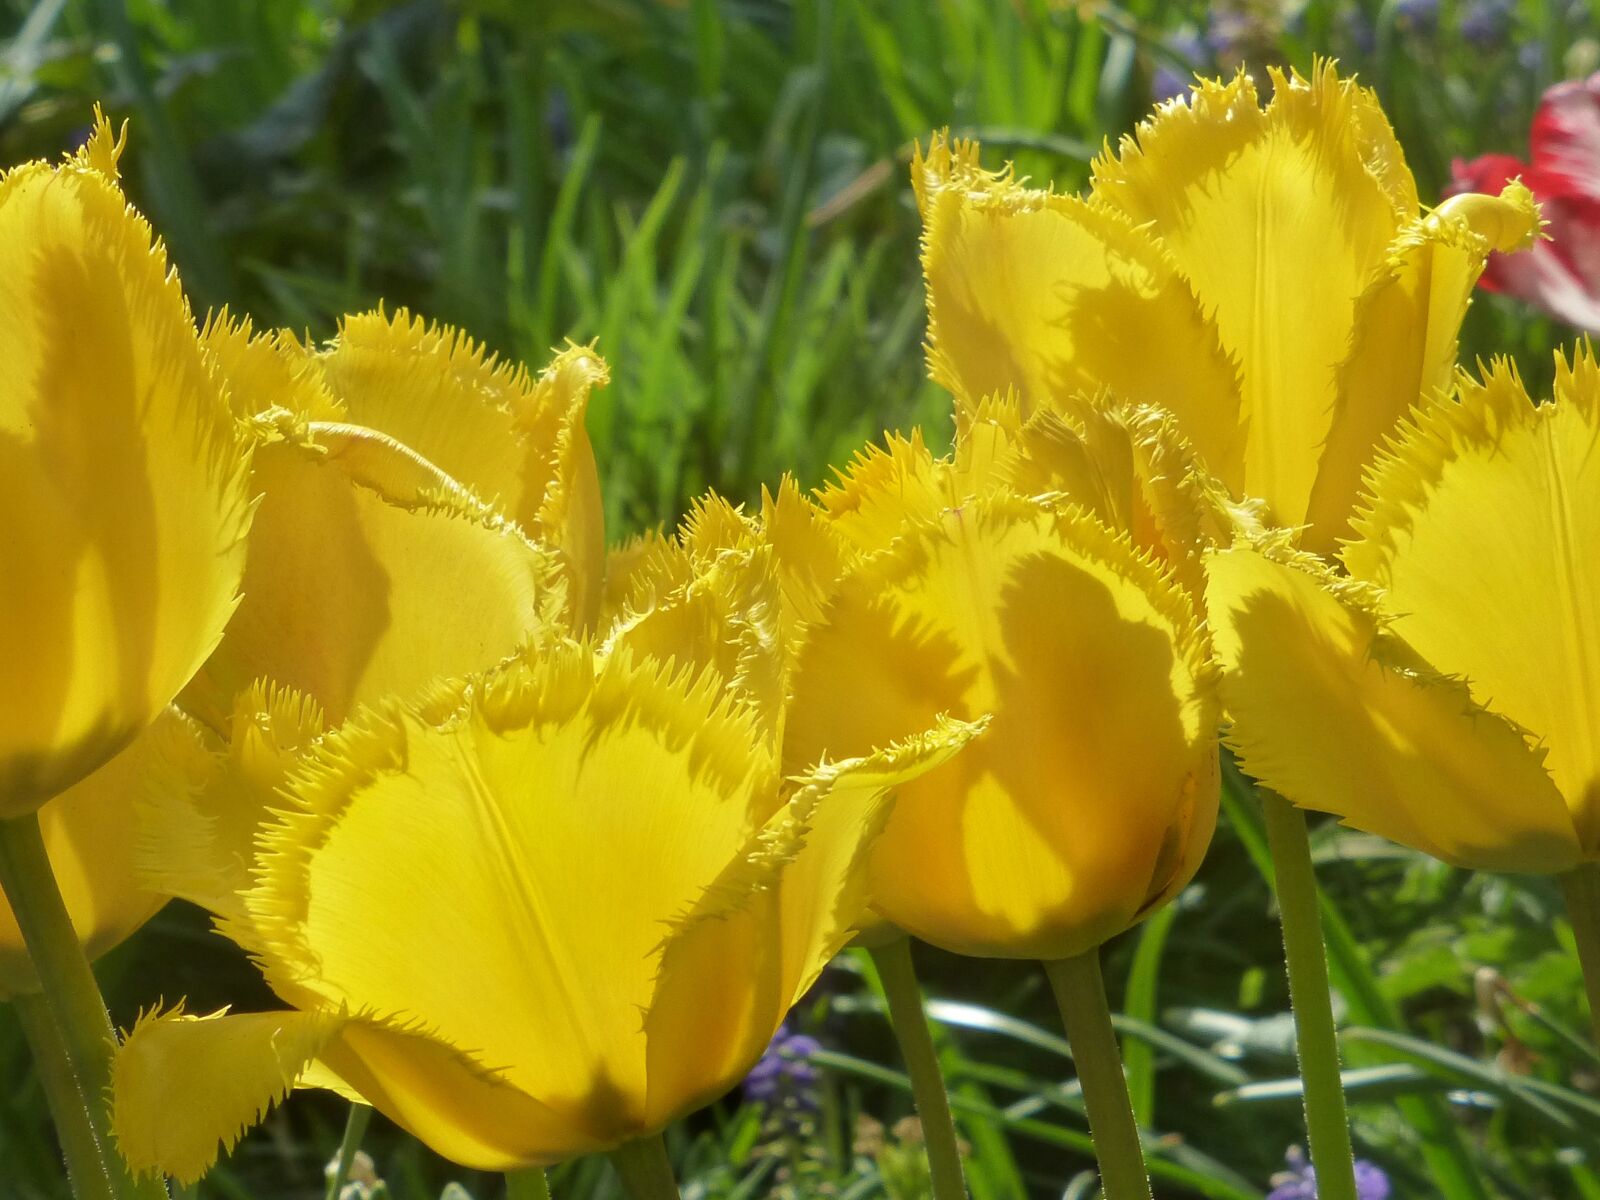 Panasonic DMC-TZ31 sample photo. Tulips, tulipa, fringed flower photography